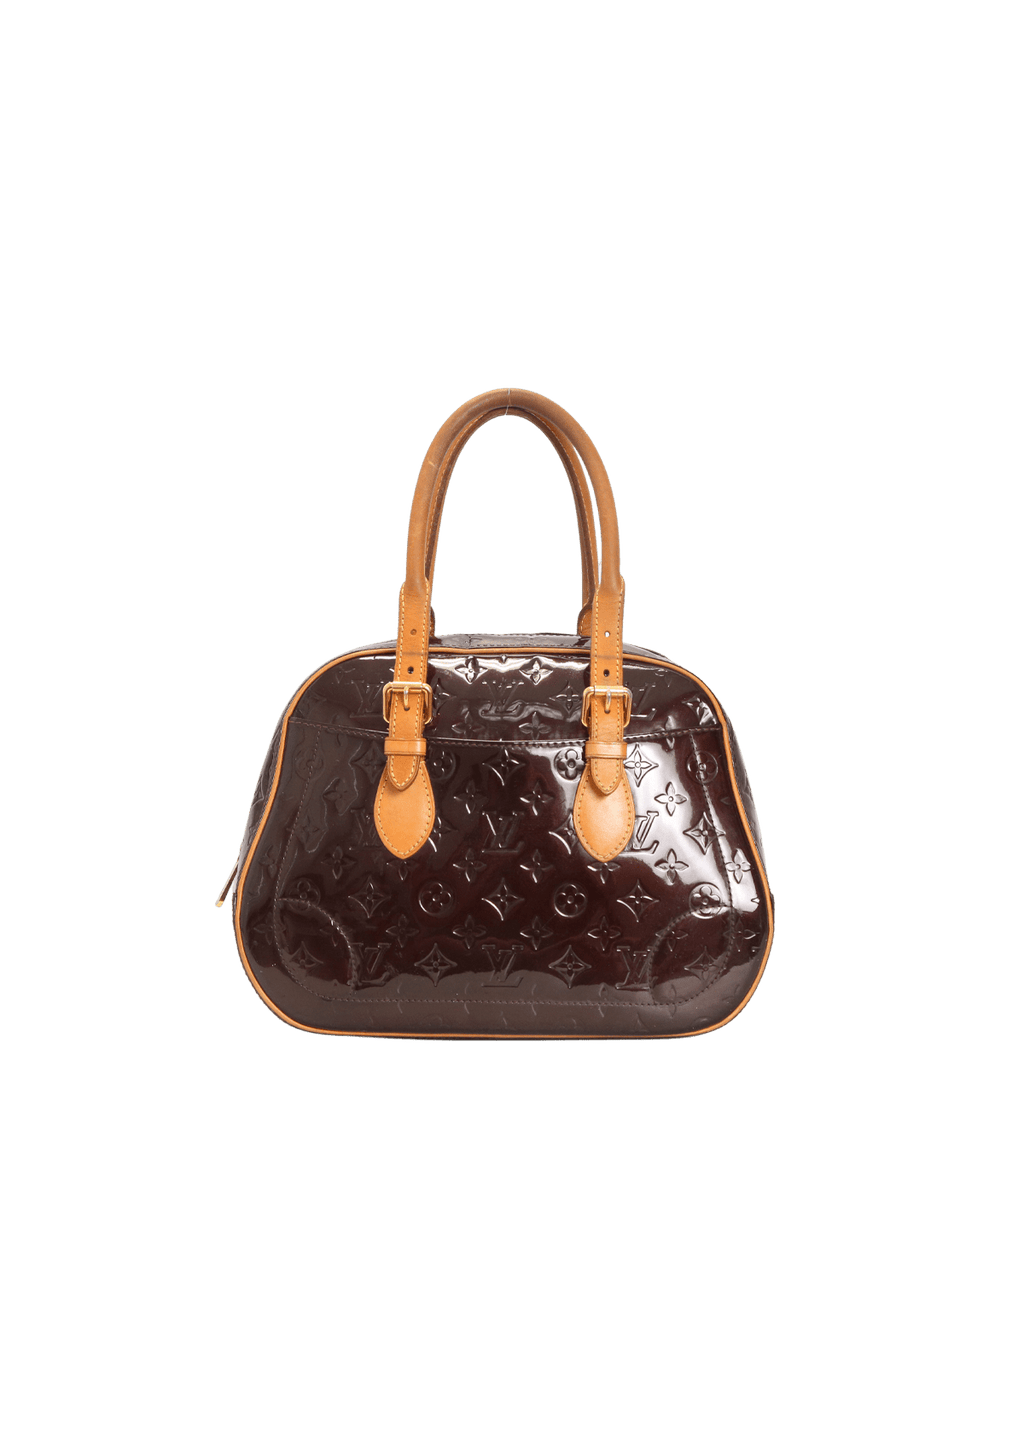 Louis Vuitton Summit Drive Monogram Vernis Satchel Bag